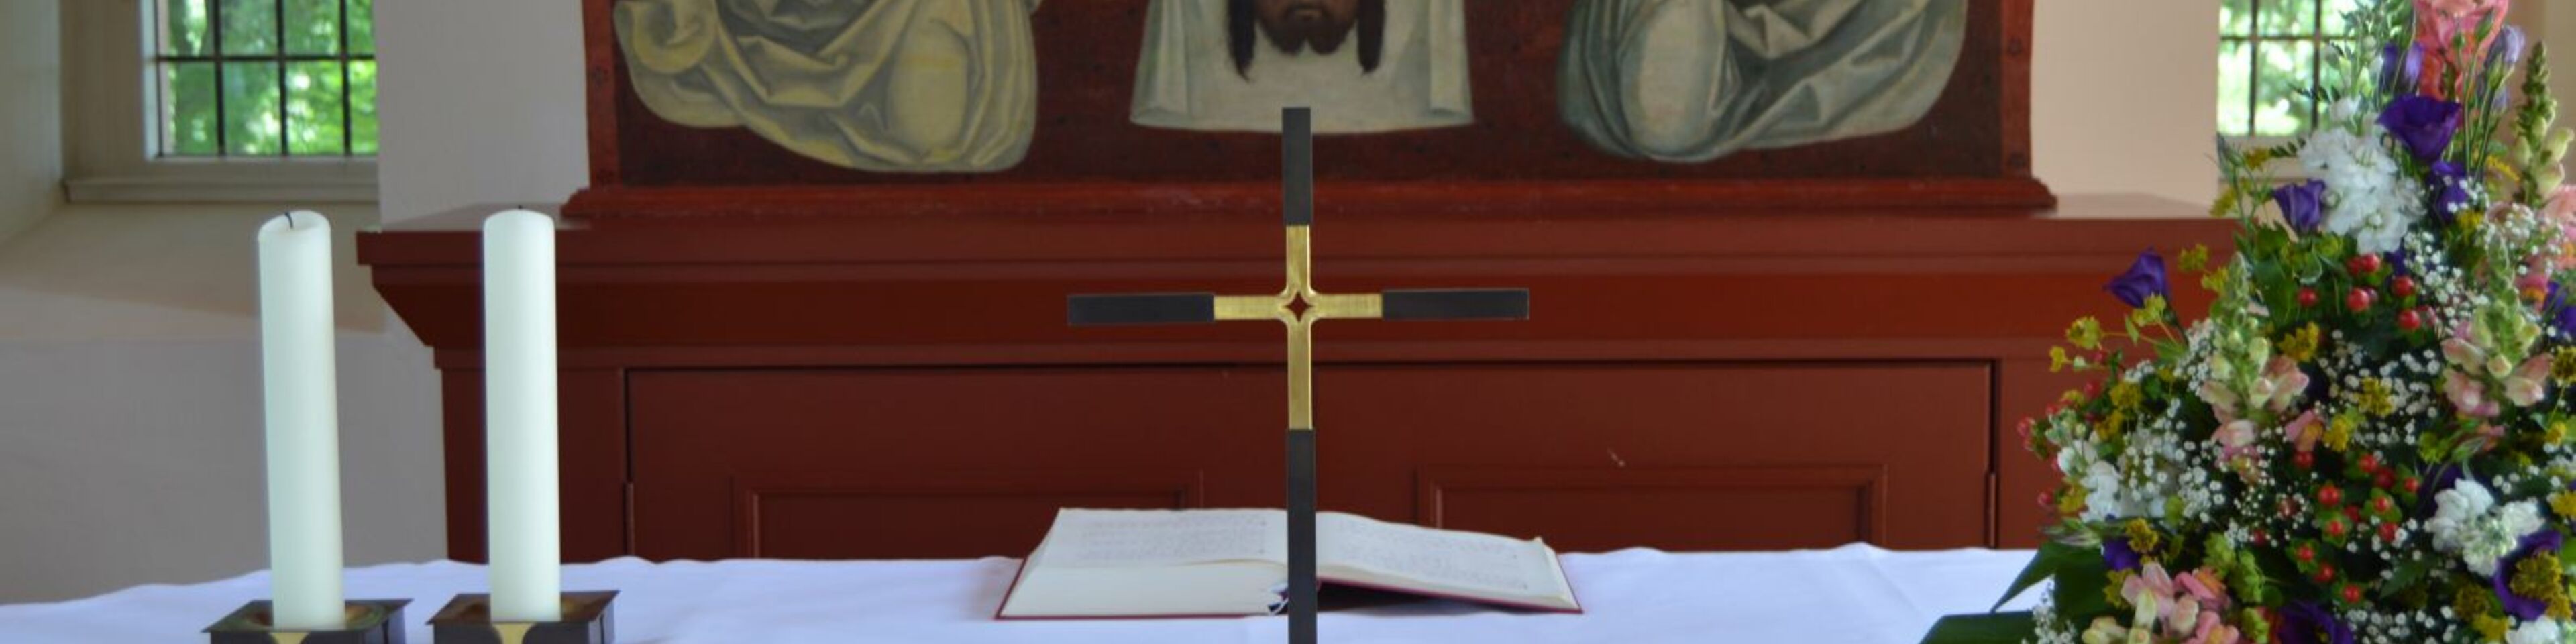 Altar mit Kreuz